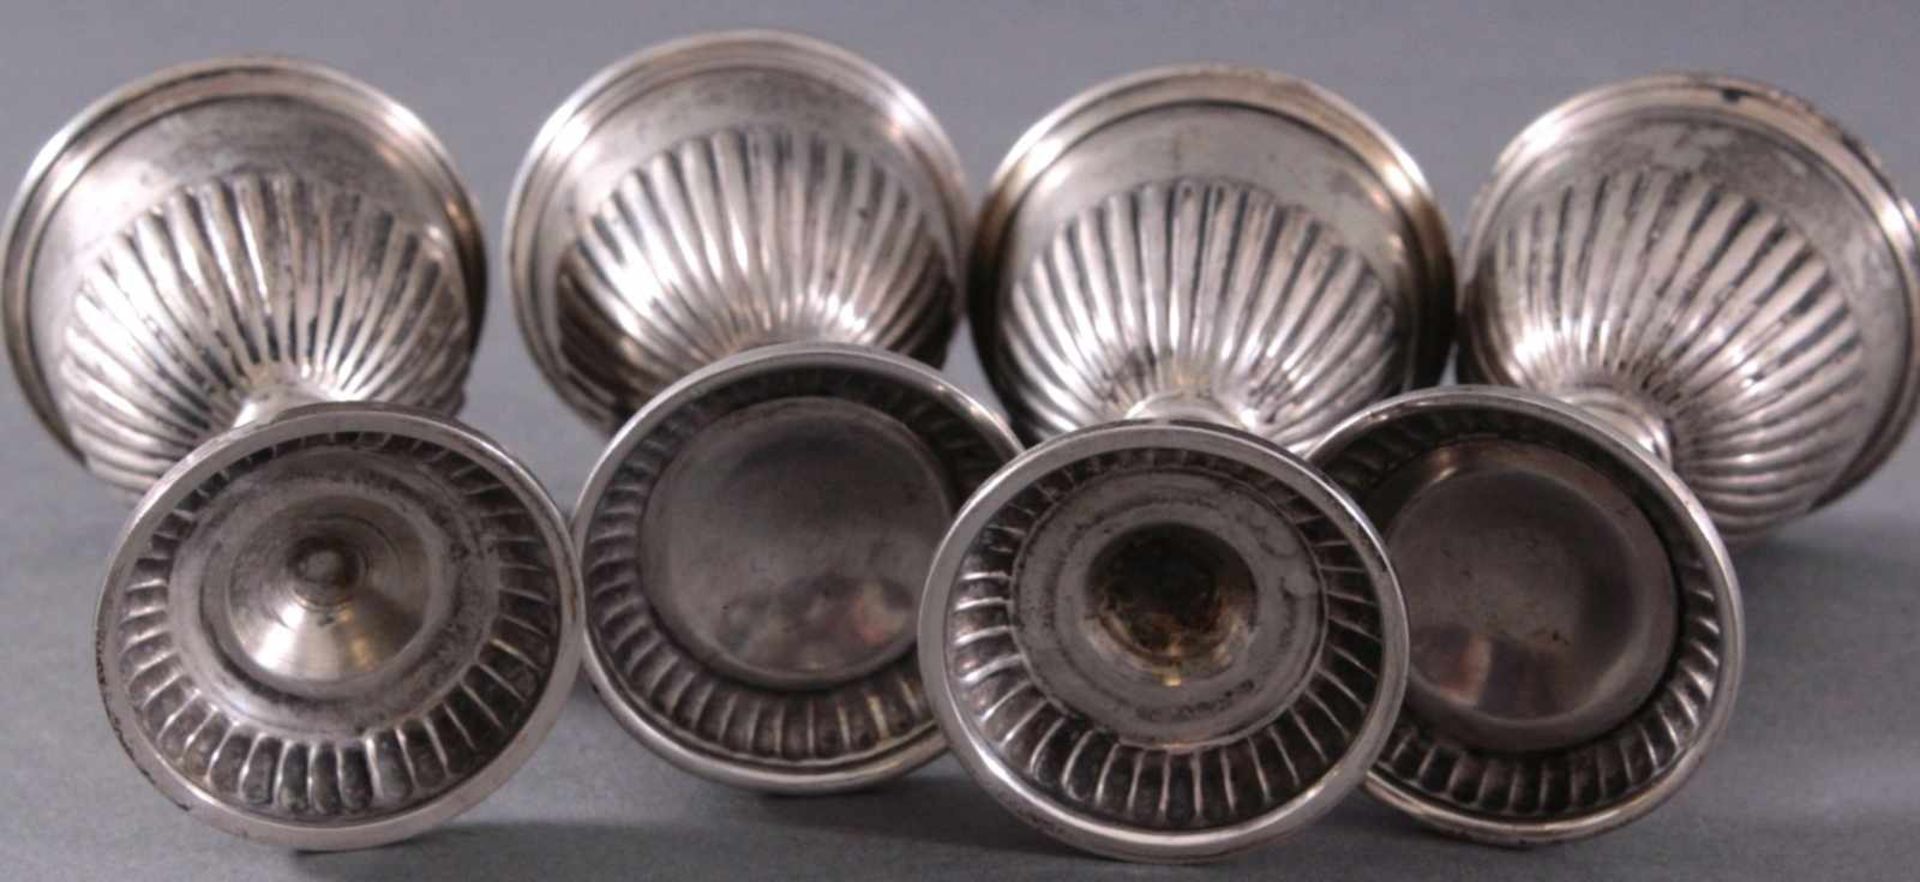 4 silberne Eierbecher um 1900Deutsche Punze Sichel und Krone 800er Silber, ca. Höhe 7 cm,191 g. - Image 4 of 4